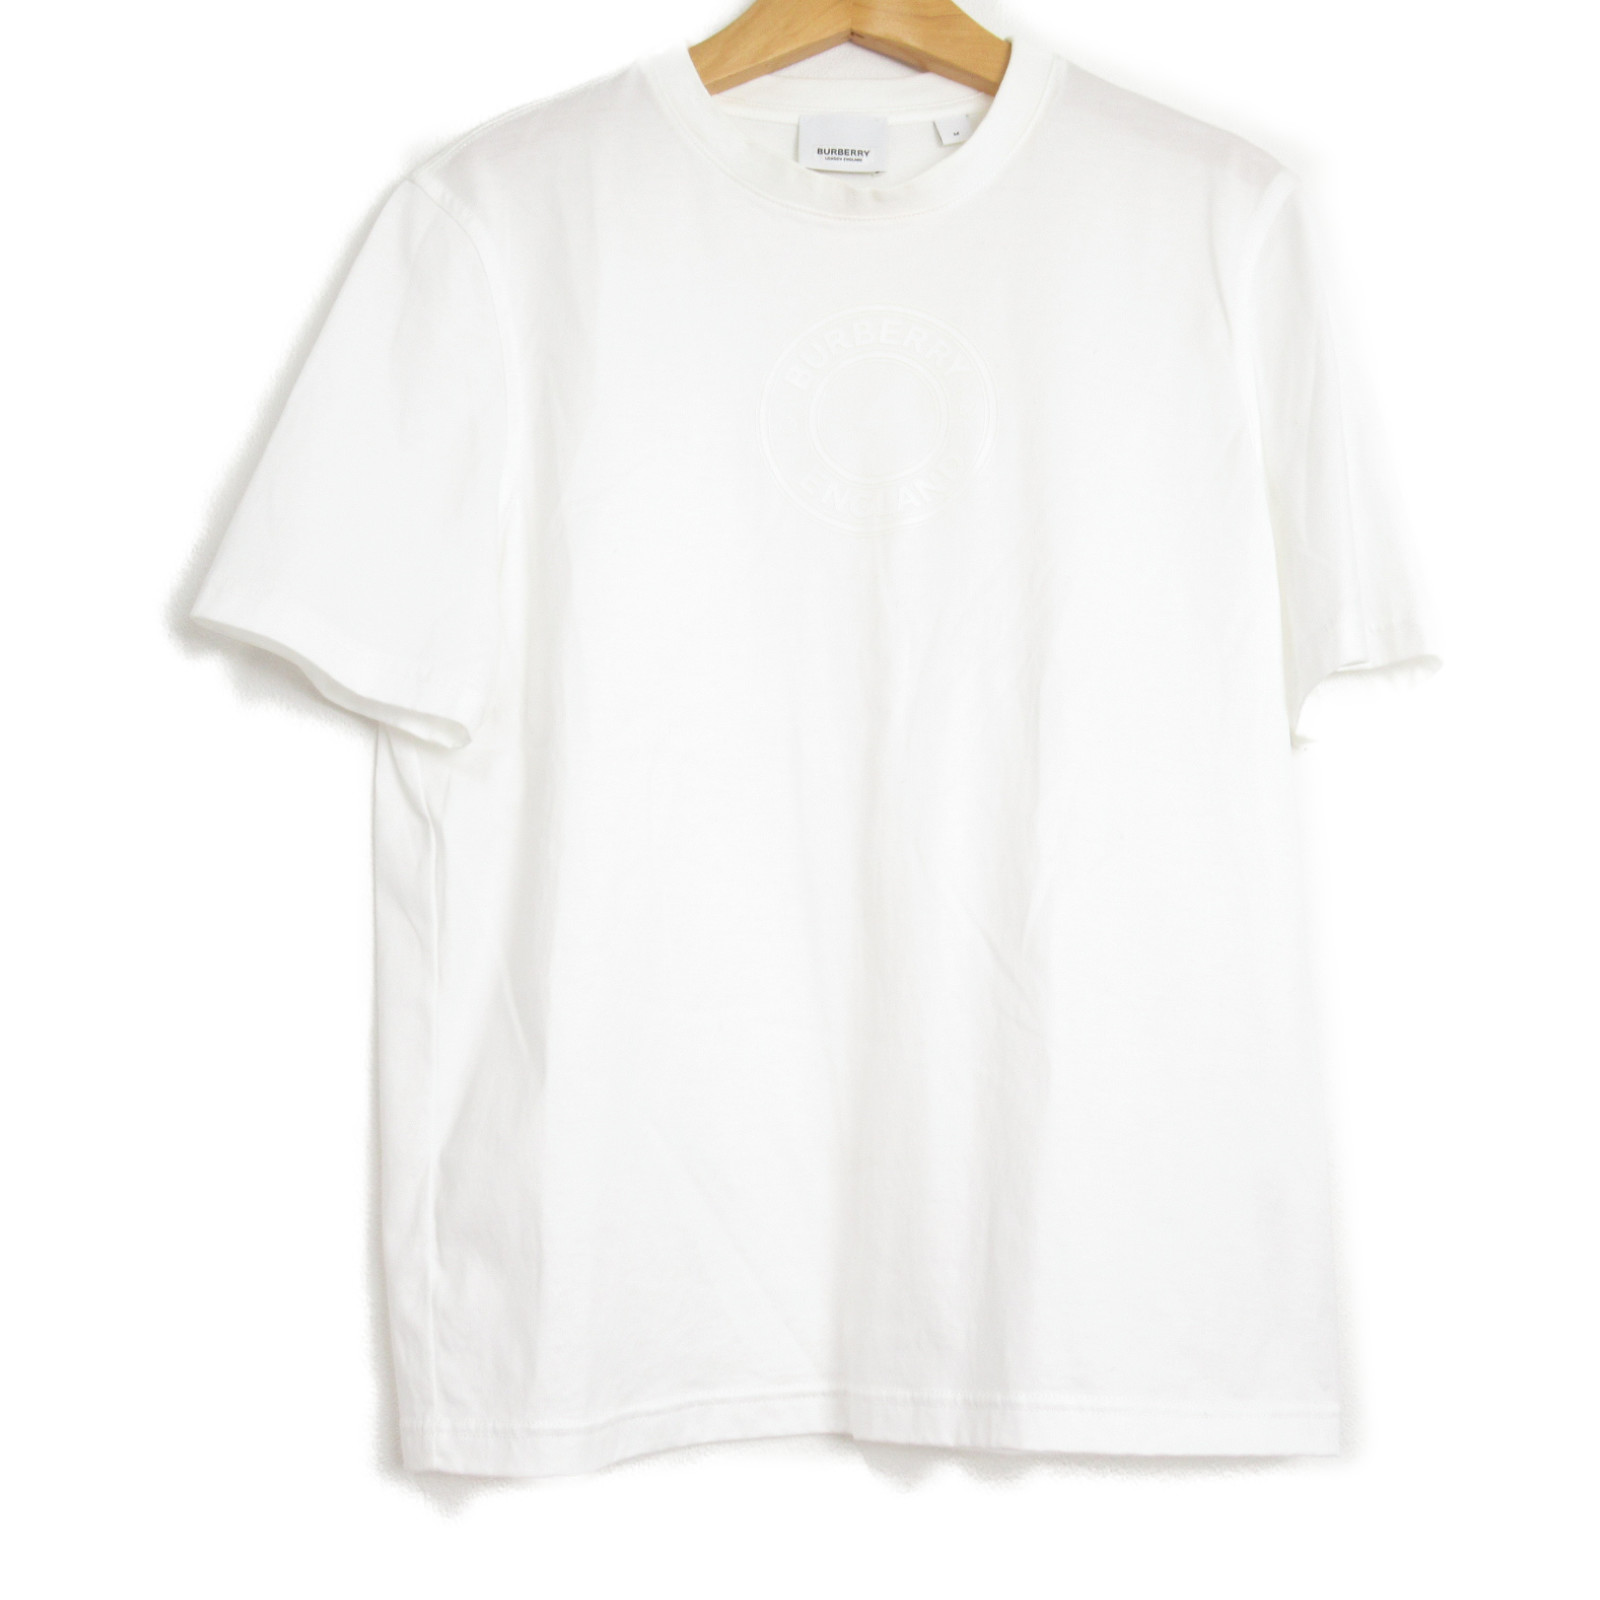 バーバリー BURBERRY Tシャツ 半袖Tシャツ 衣料品 トップス コットン レディース ホワイト系  衣類 ブランド シャツ カットソー